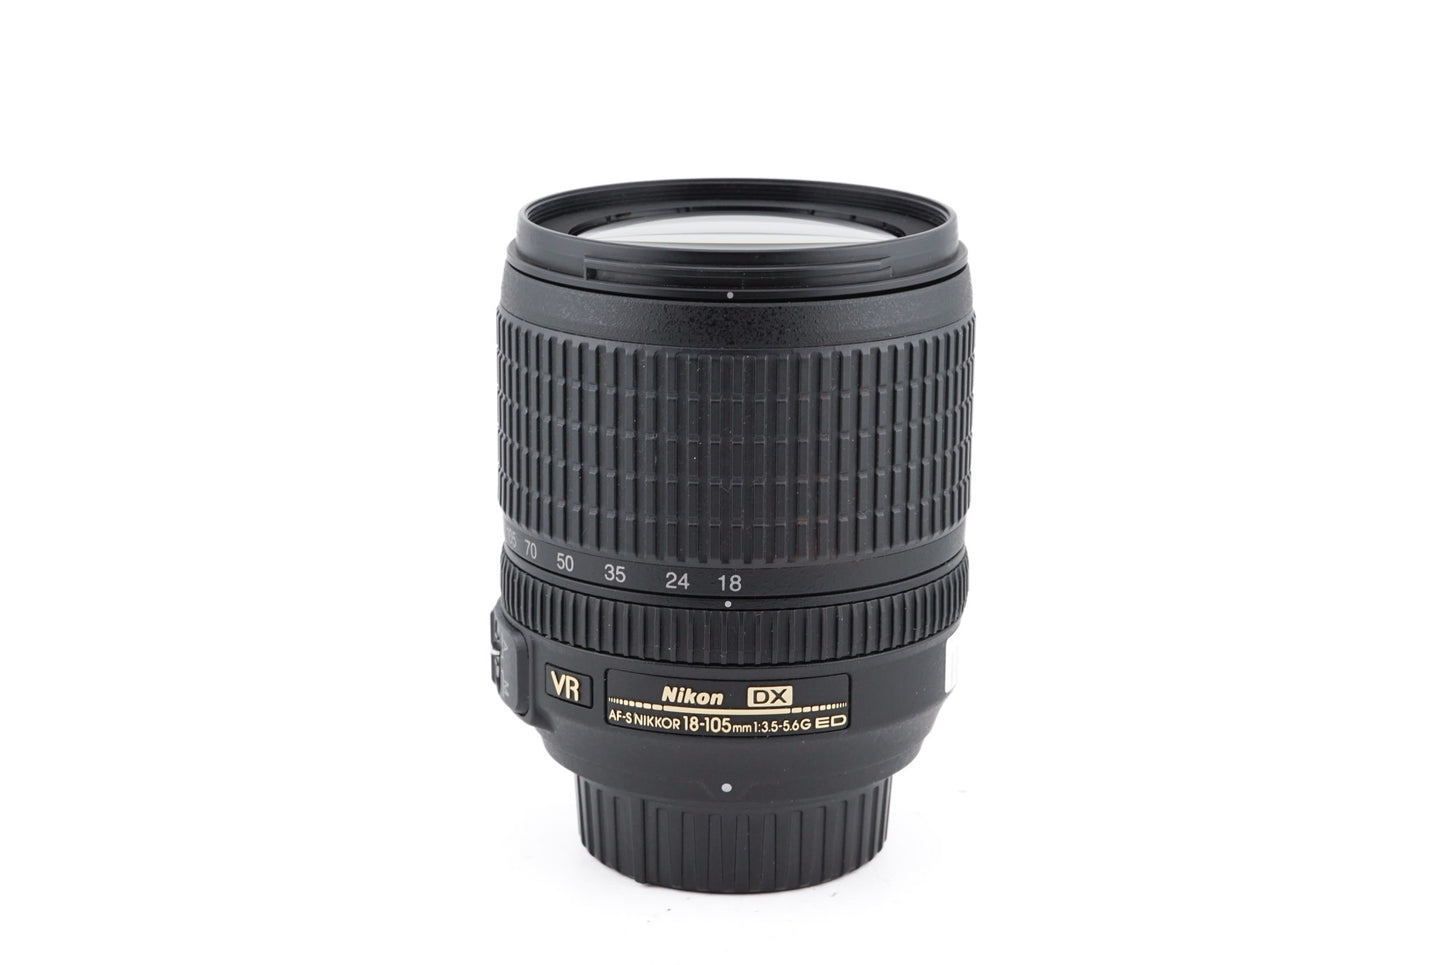 Nikon 18-105mm f3.5-5.6 G ED VR AF-S Nikkor - Lens